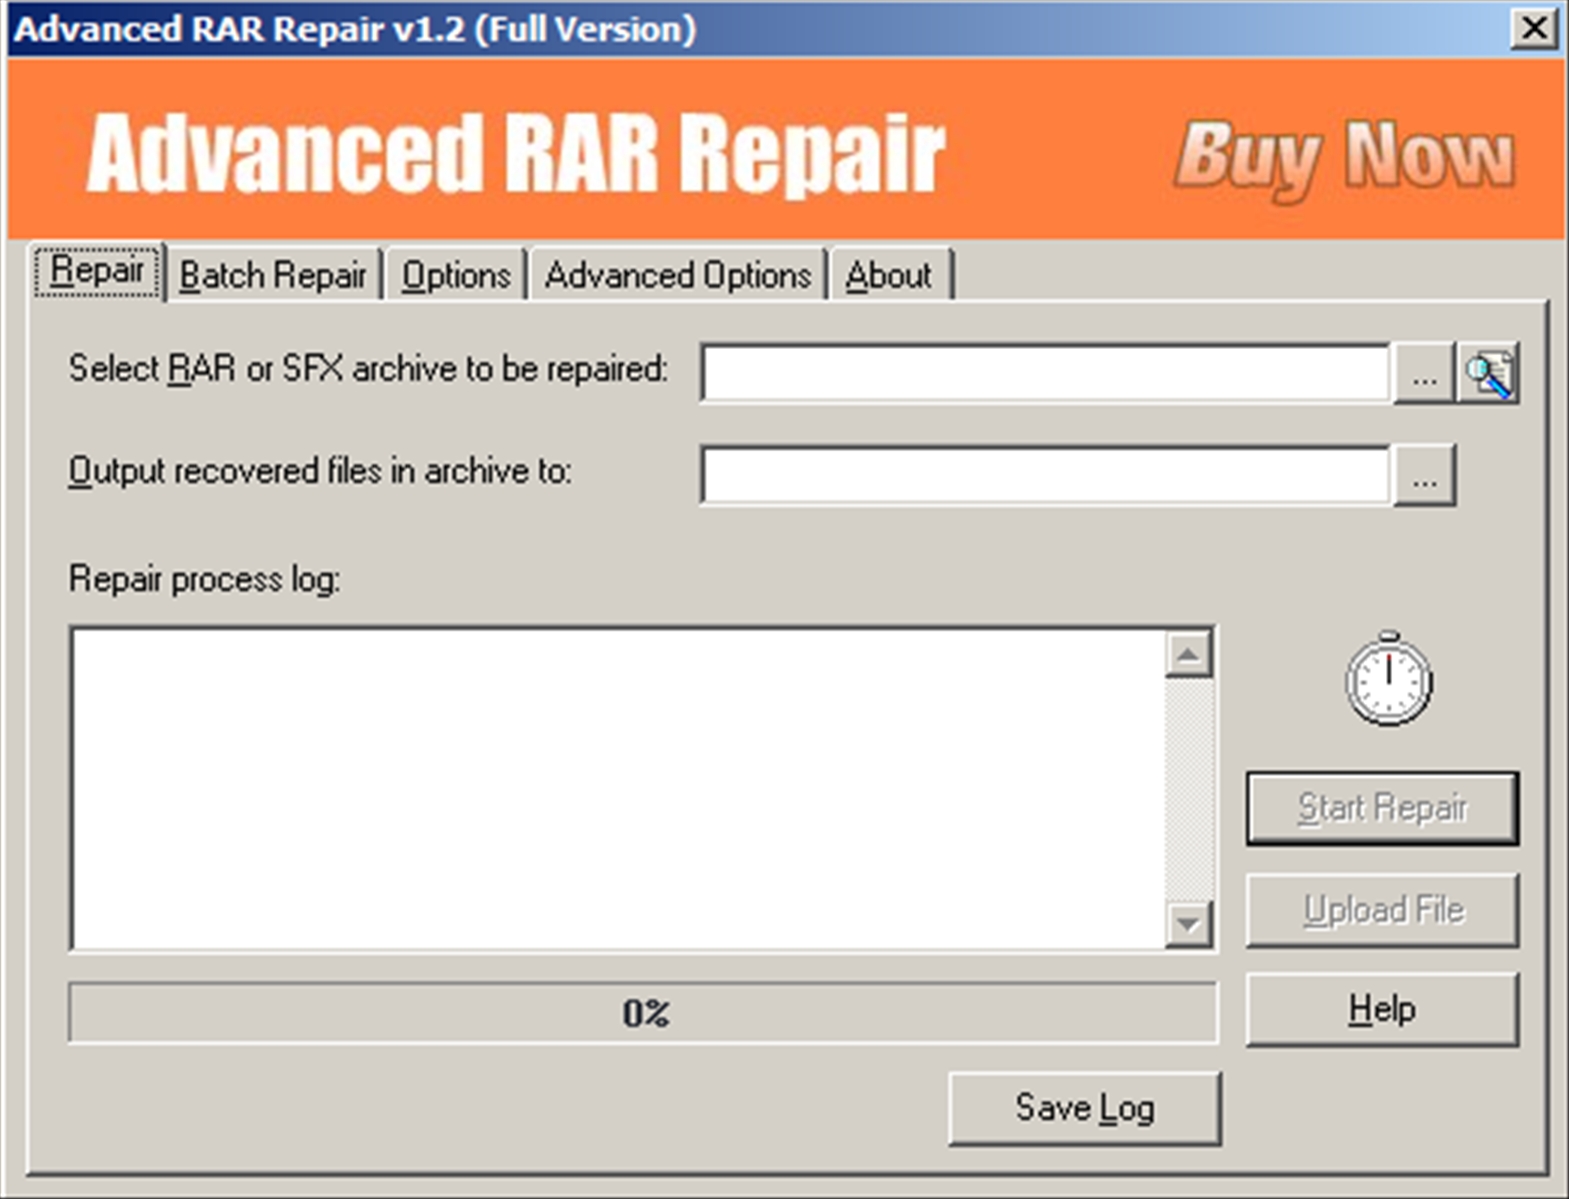 advanced rar repair full version download